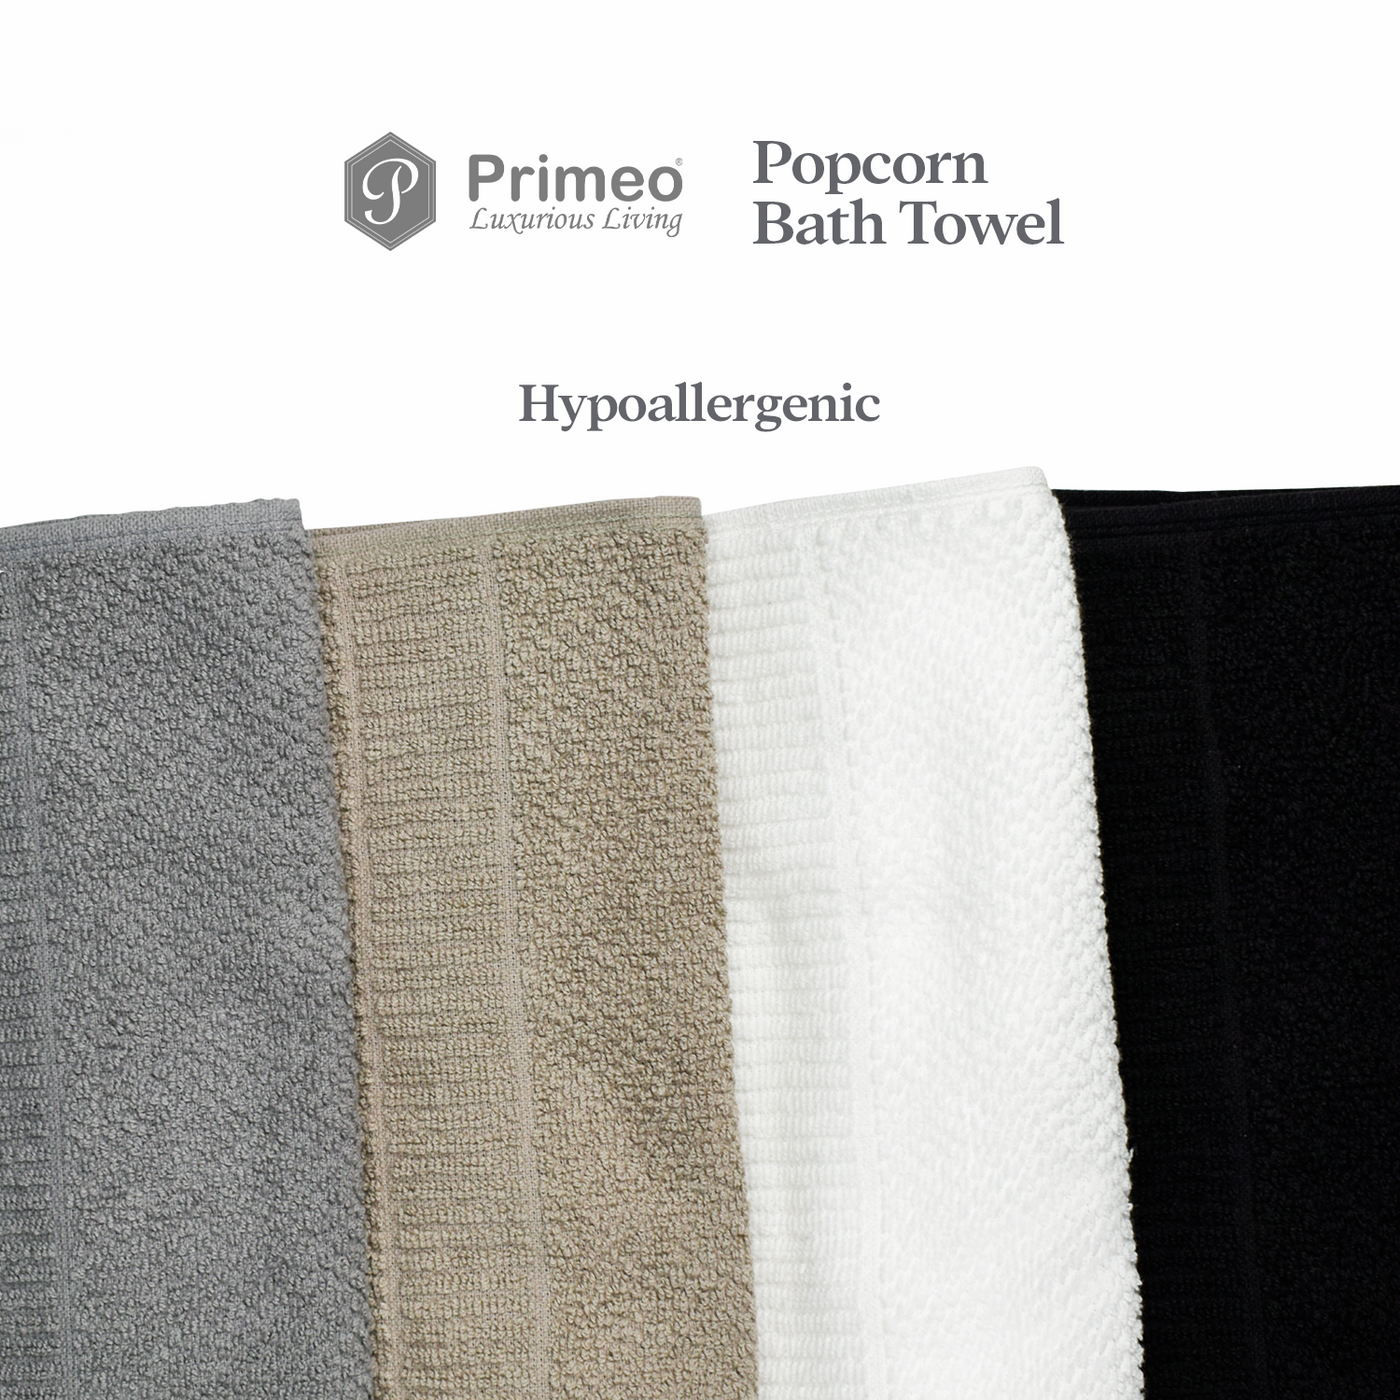 Primeo 100% Cotton Bath Towel - Popcorn Weave Collection Towels